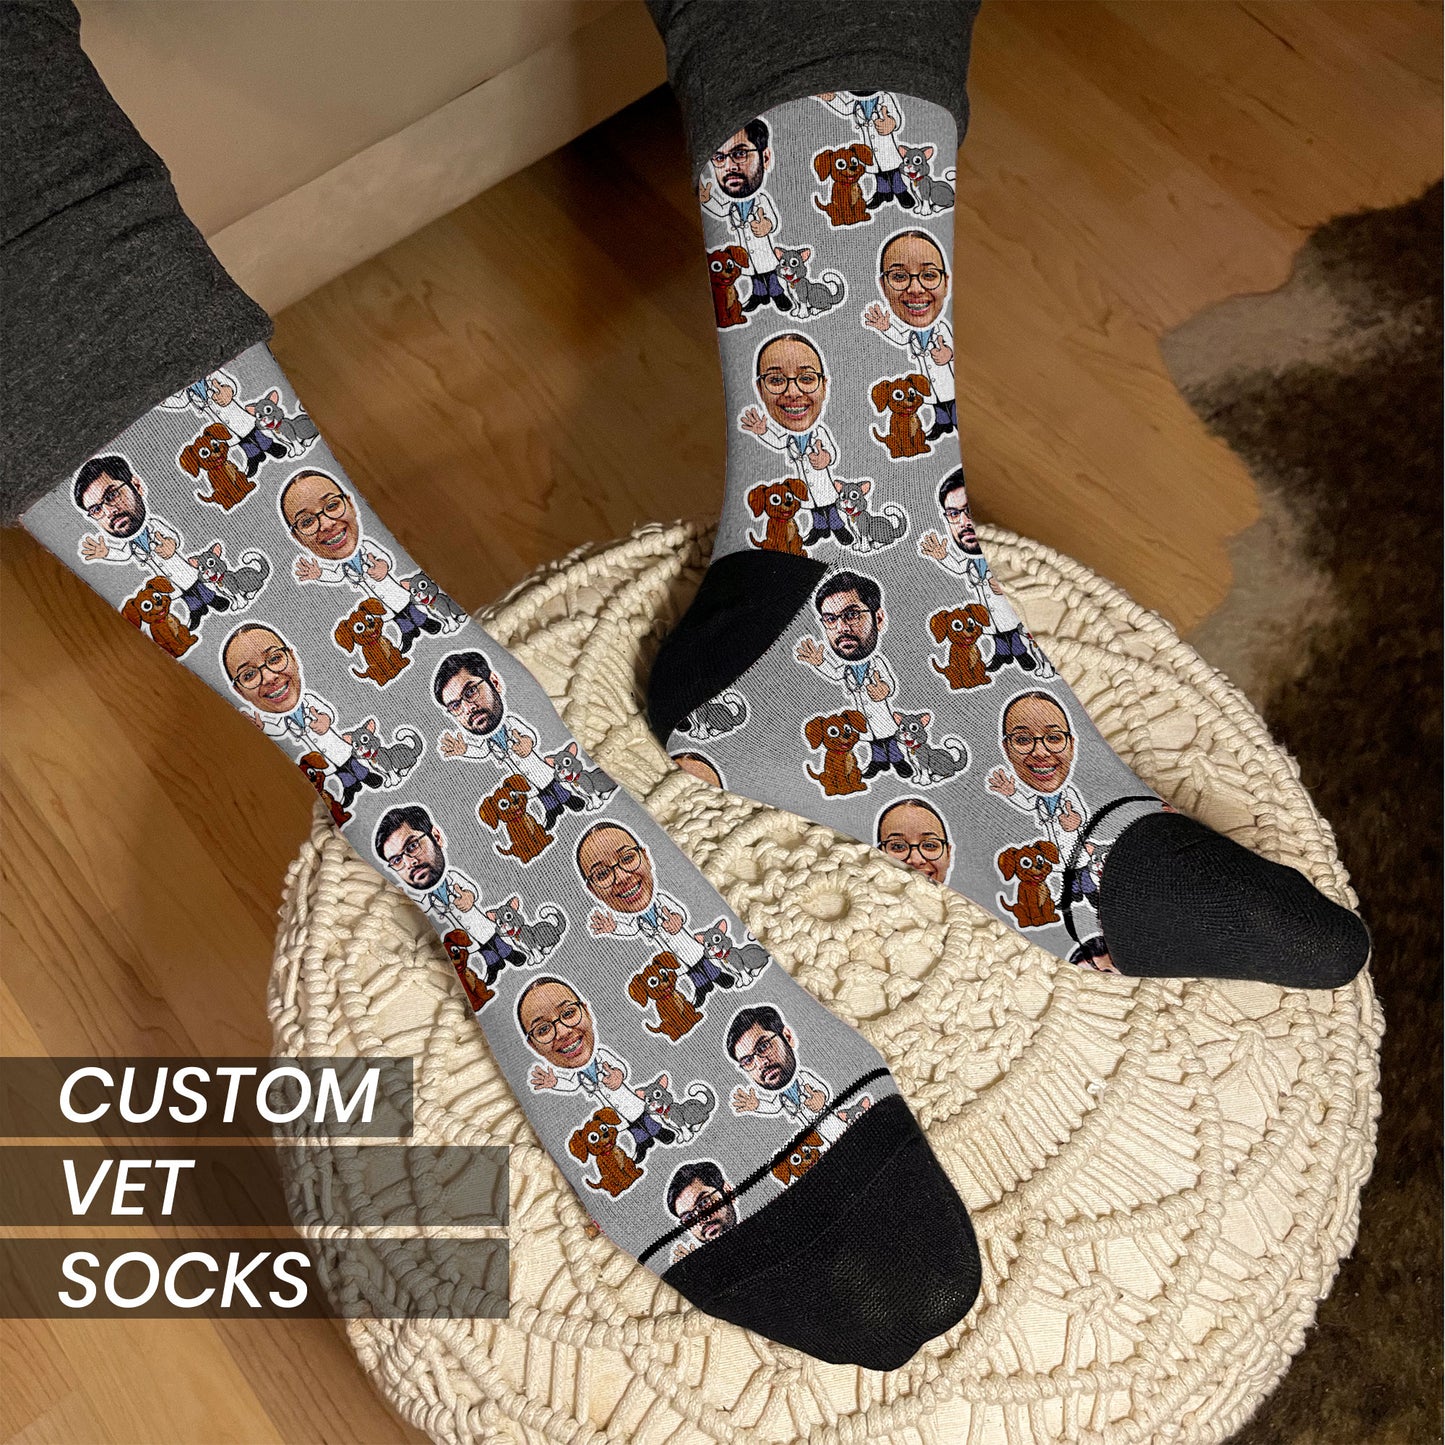 custom vet socks in grey on feet